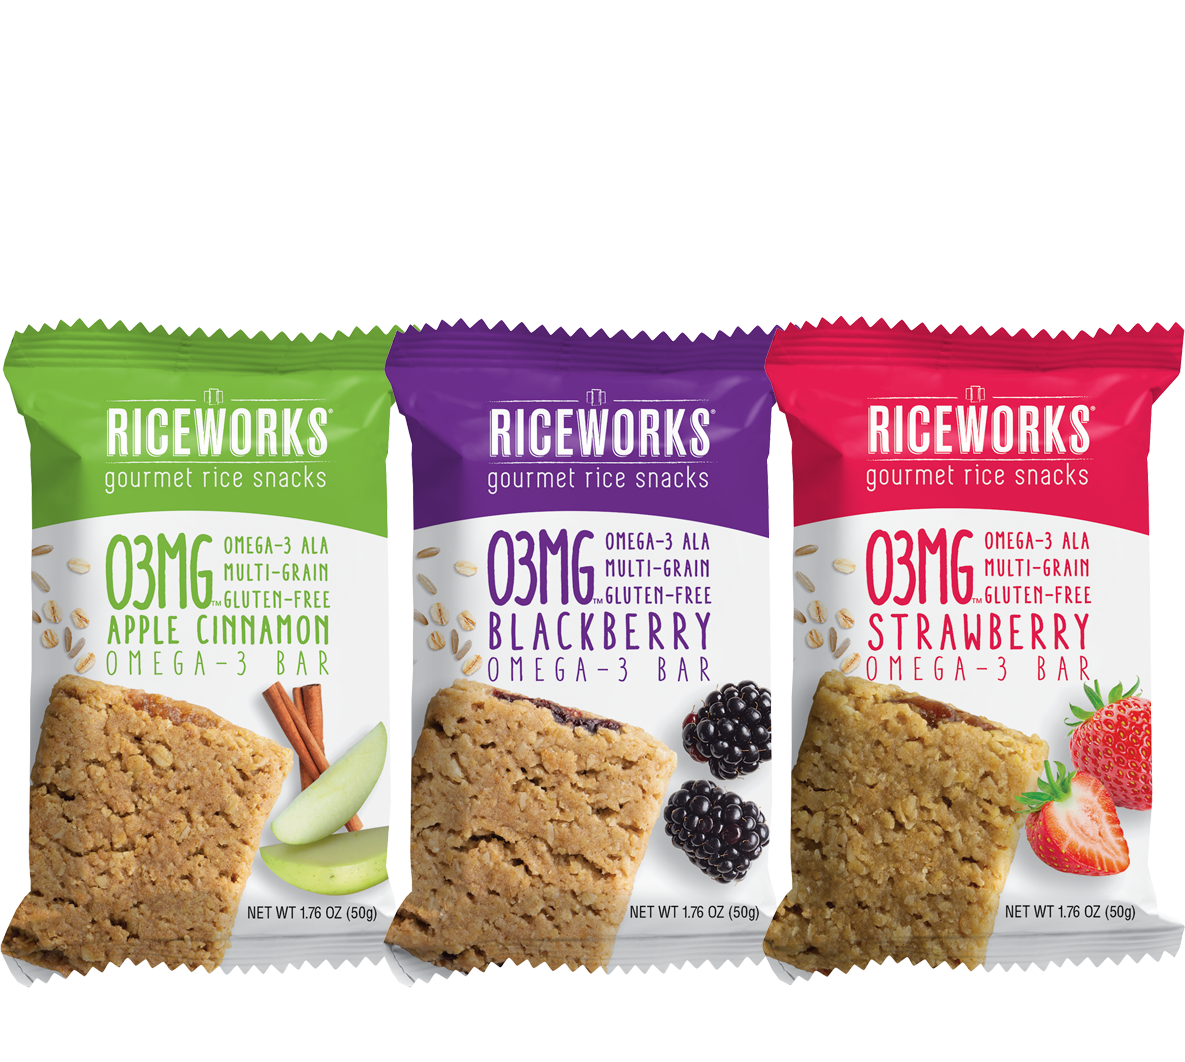 O3MG - Omega-3 ALA, Gluten-Free, Multi-Grain - Omega-3 Bars